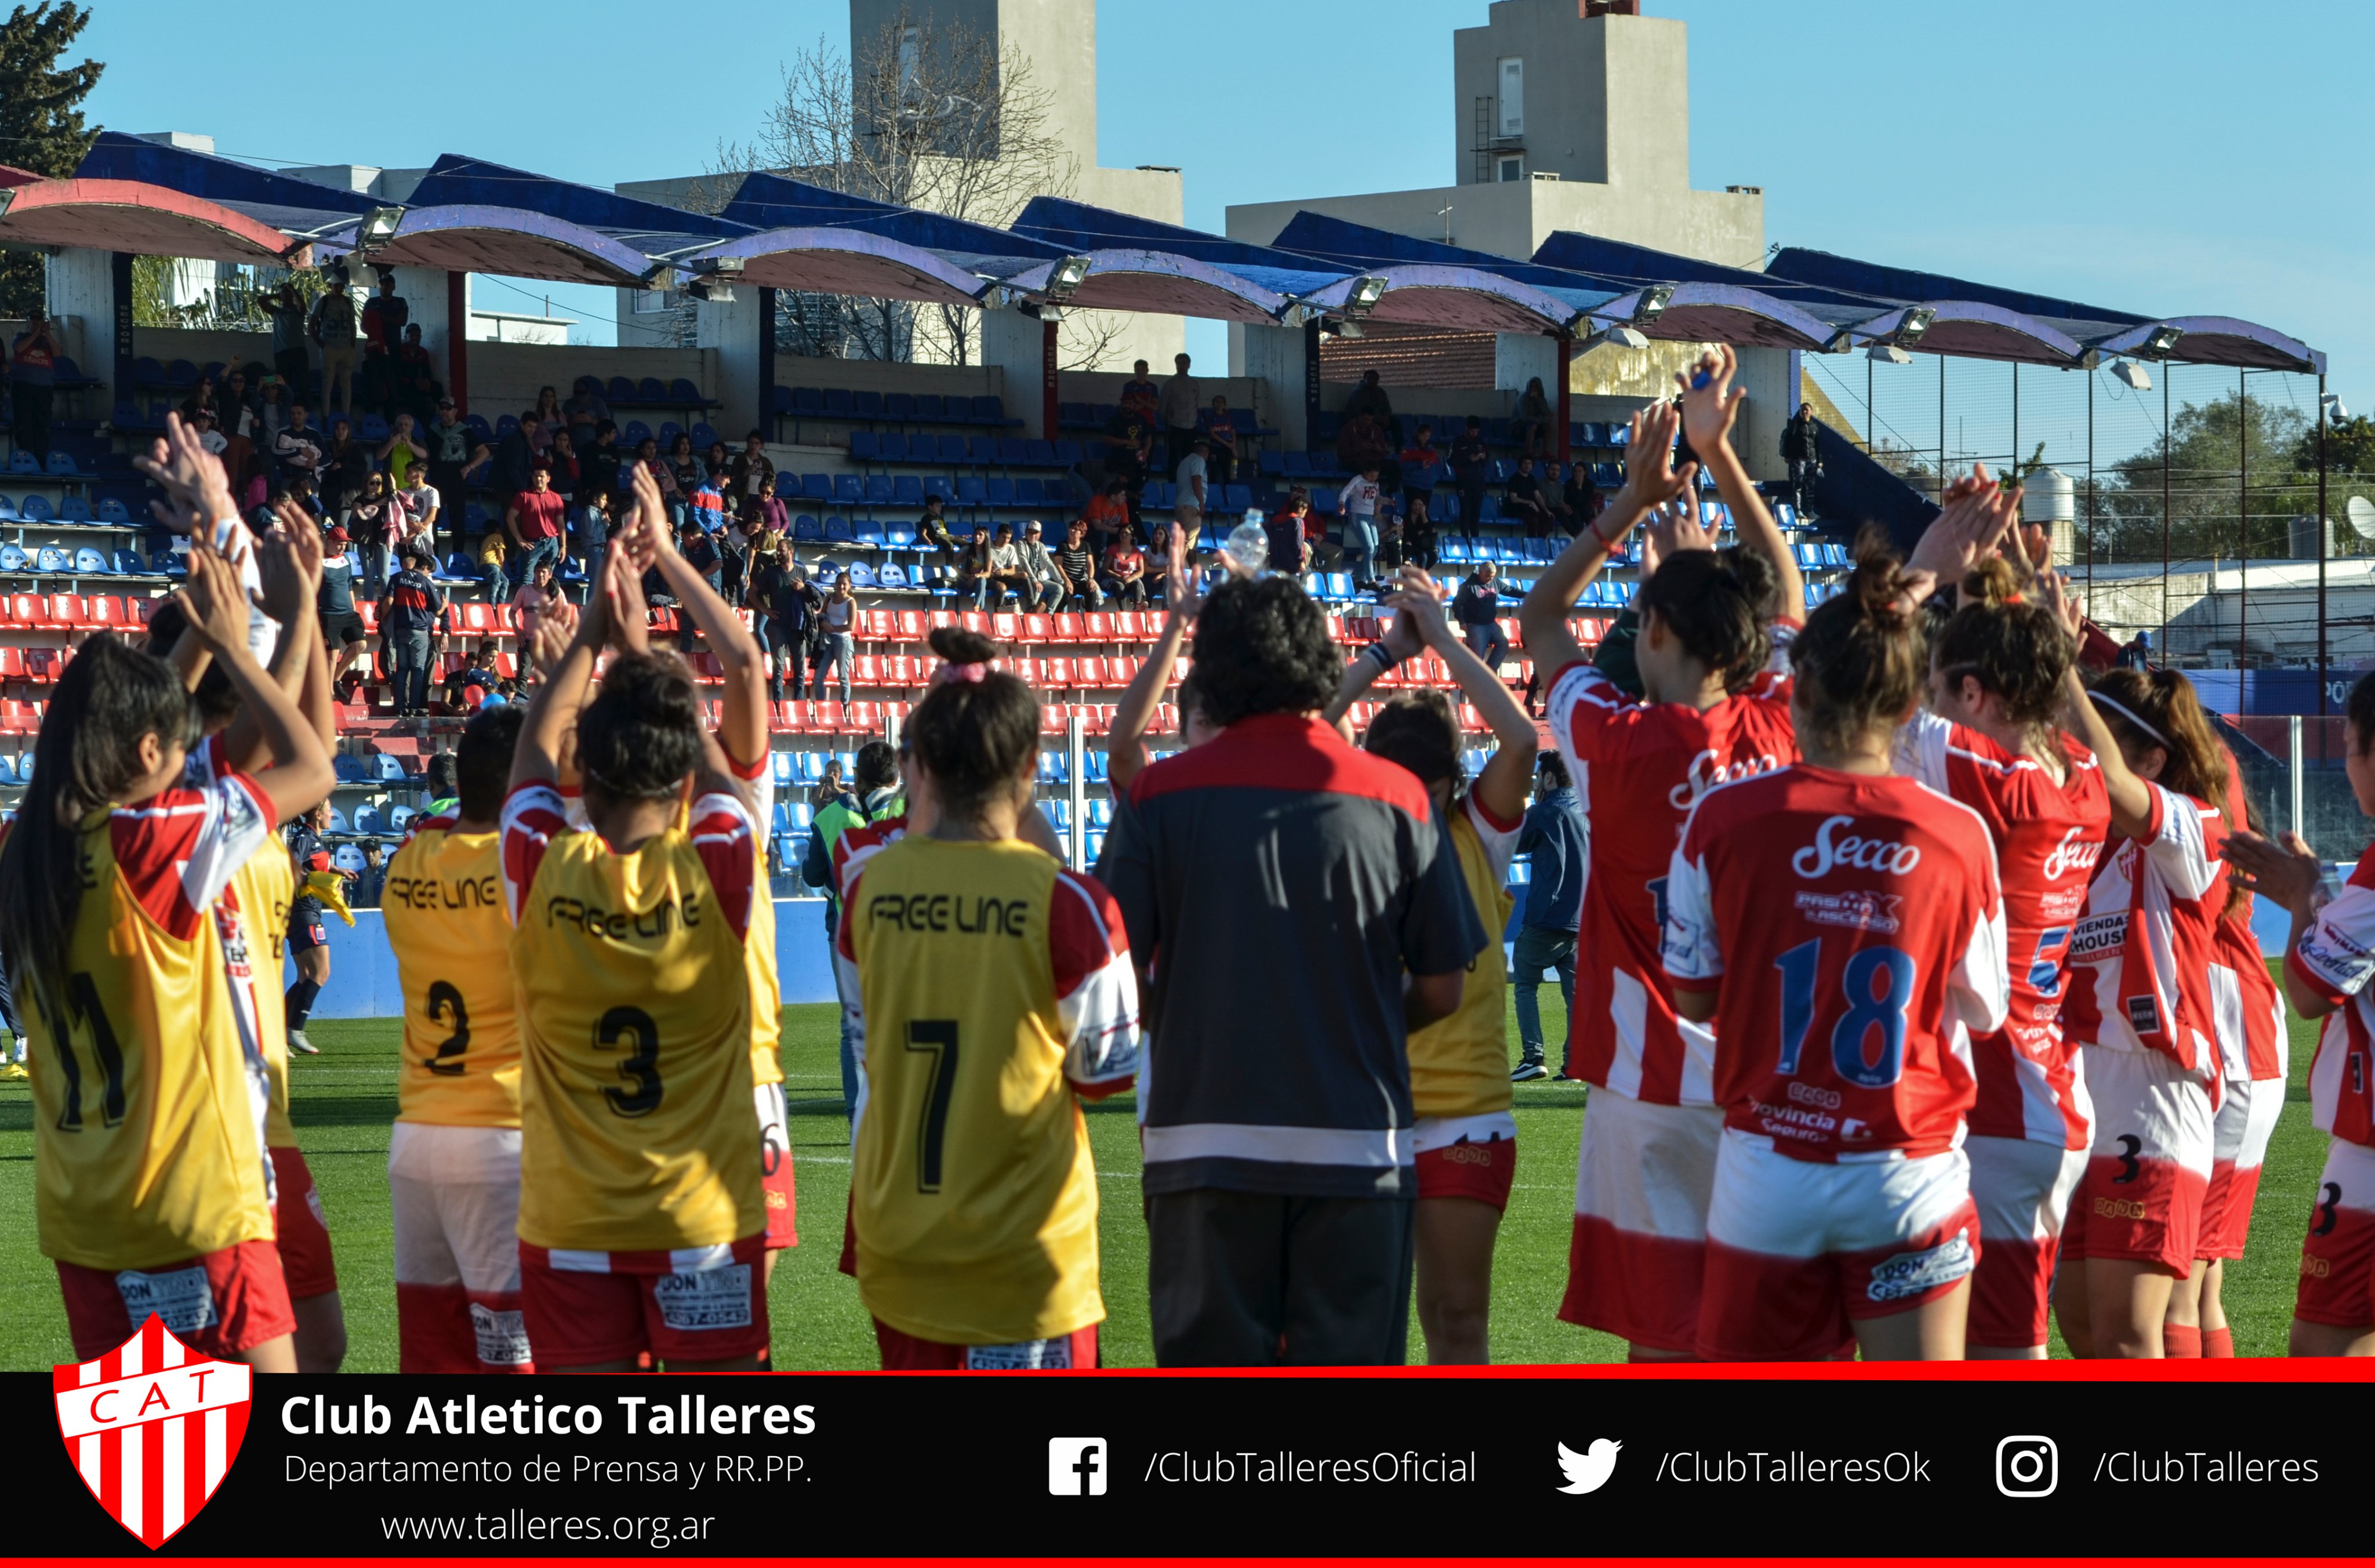 Club Atlético Talleres on X: #FútbolProfesional #PrimeraB ¡Talleres tiene  rivales! 💪 1era fecha: recibimos a Los Andes 🗓️ El torneo comienza el fin  de semana del 11 de febrero #SoyTalleres 🇦🇹  /